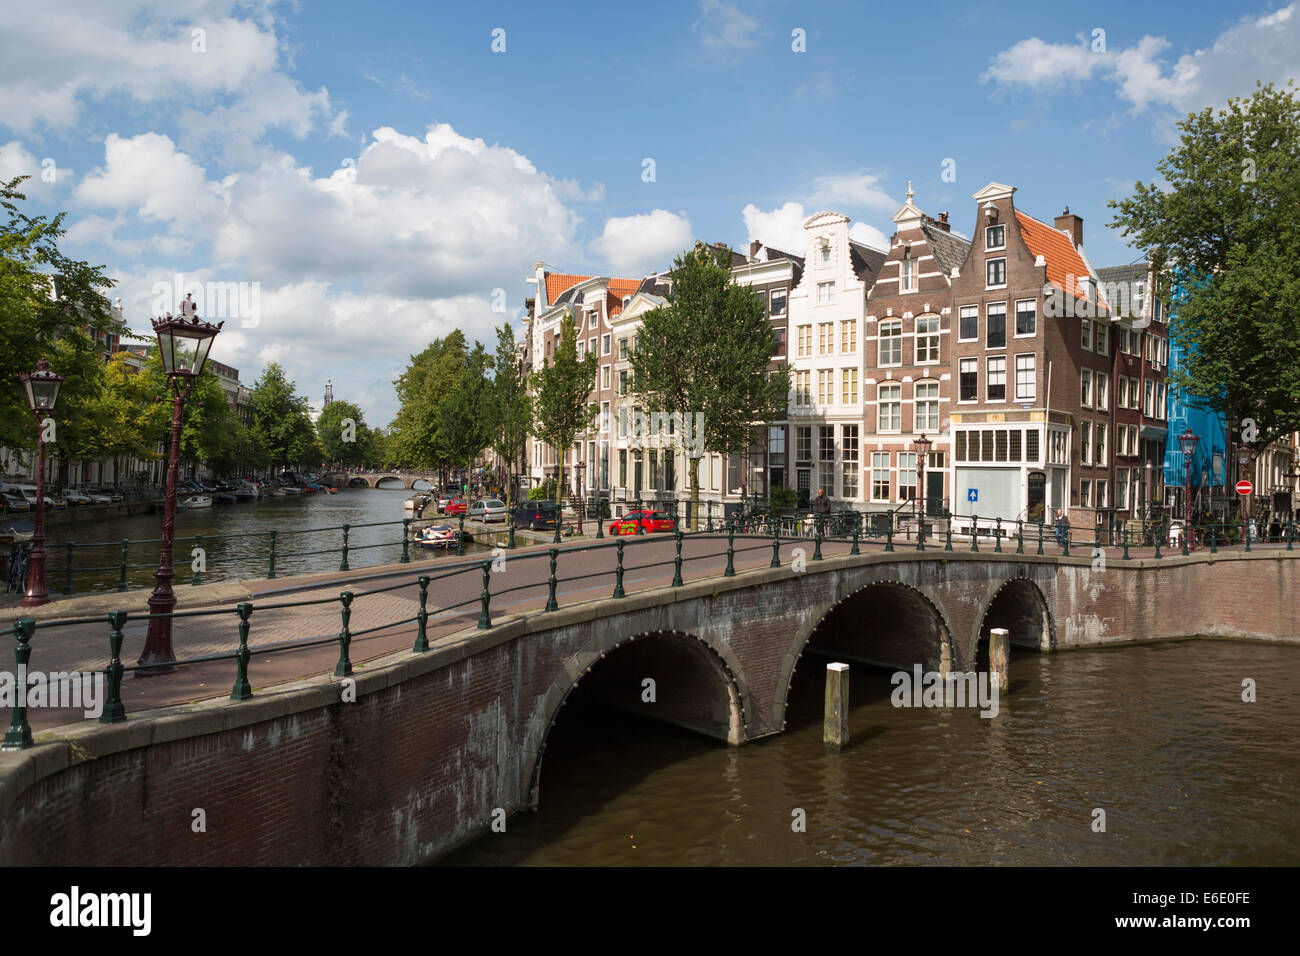 Blick auf einen der Kanäle (Keizersgracht) mit einer Brücke und historische Häuser im berühmten Viertel 'Jordaan' in Amsterdam. Stockfoto